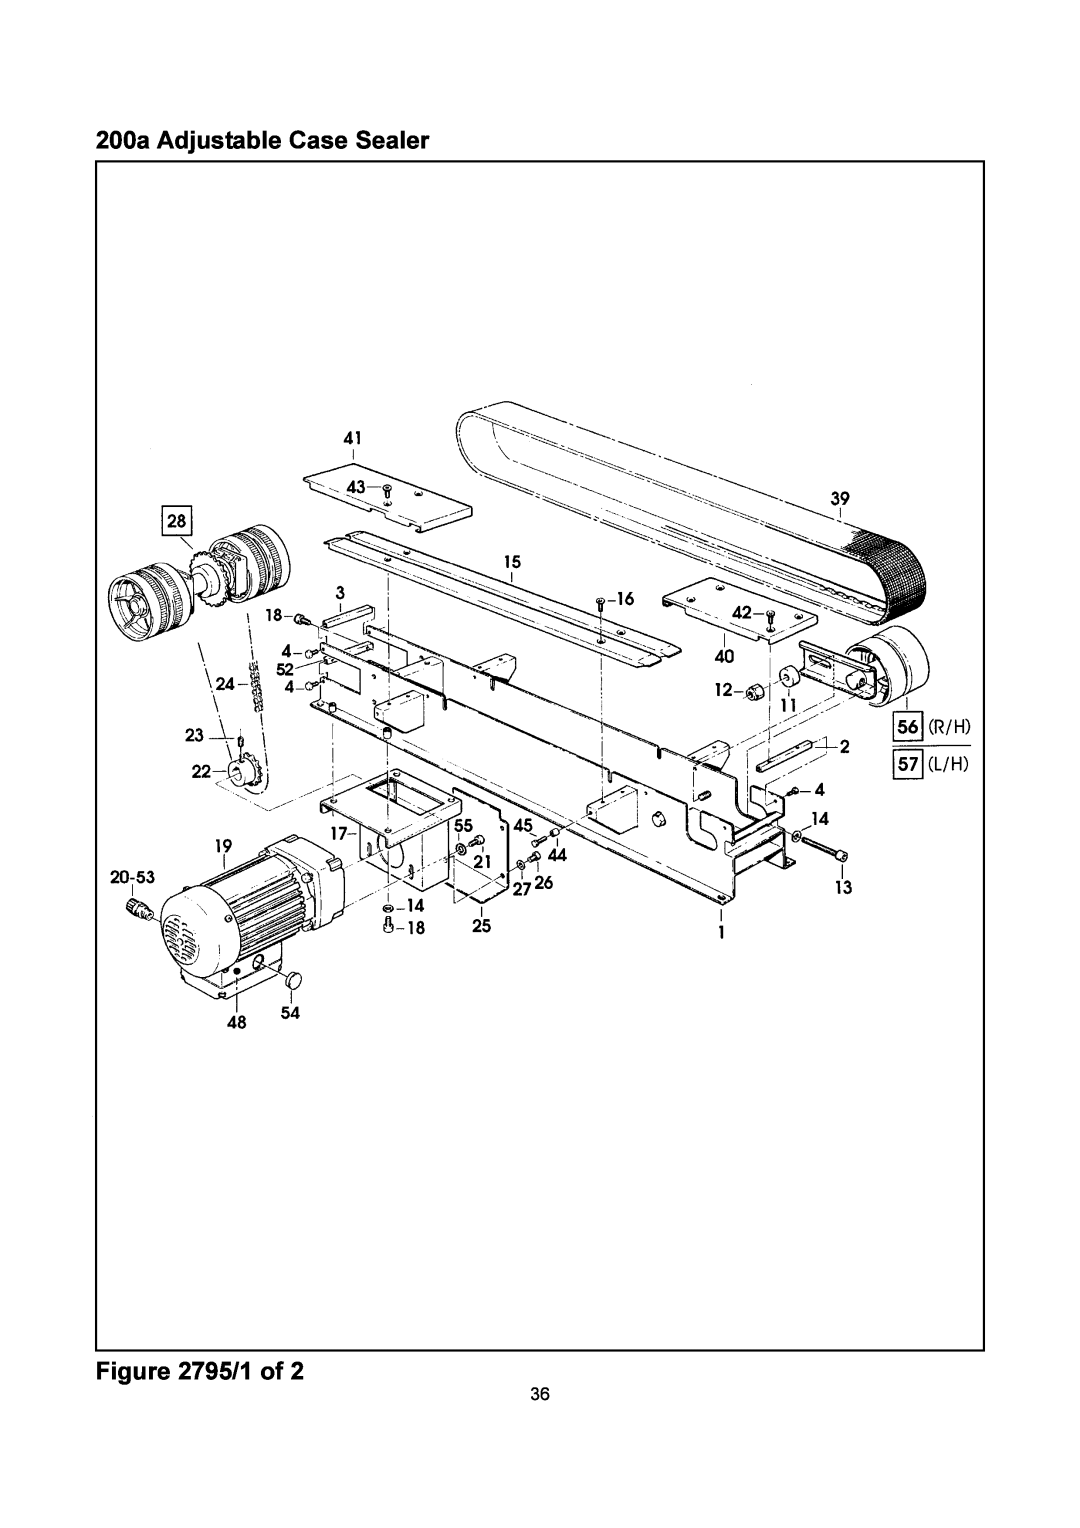 3M manual 200a Adjustable Case Sealer /1 of 